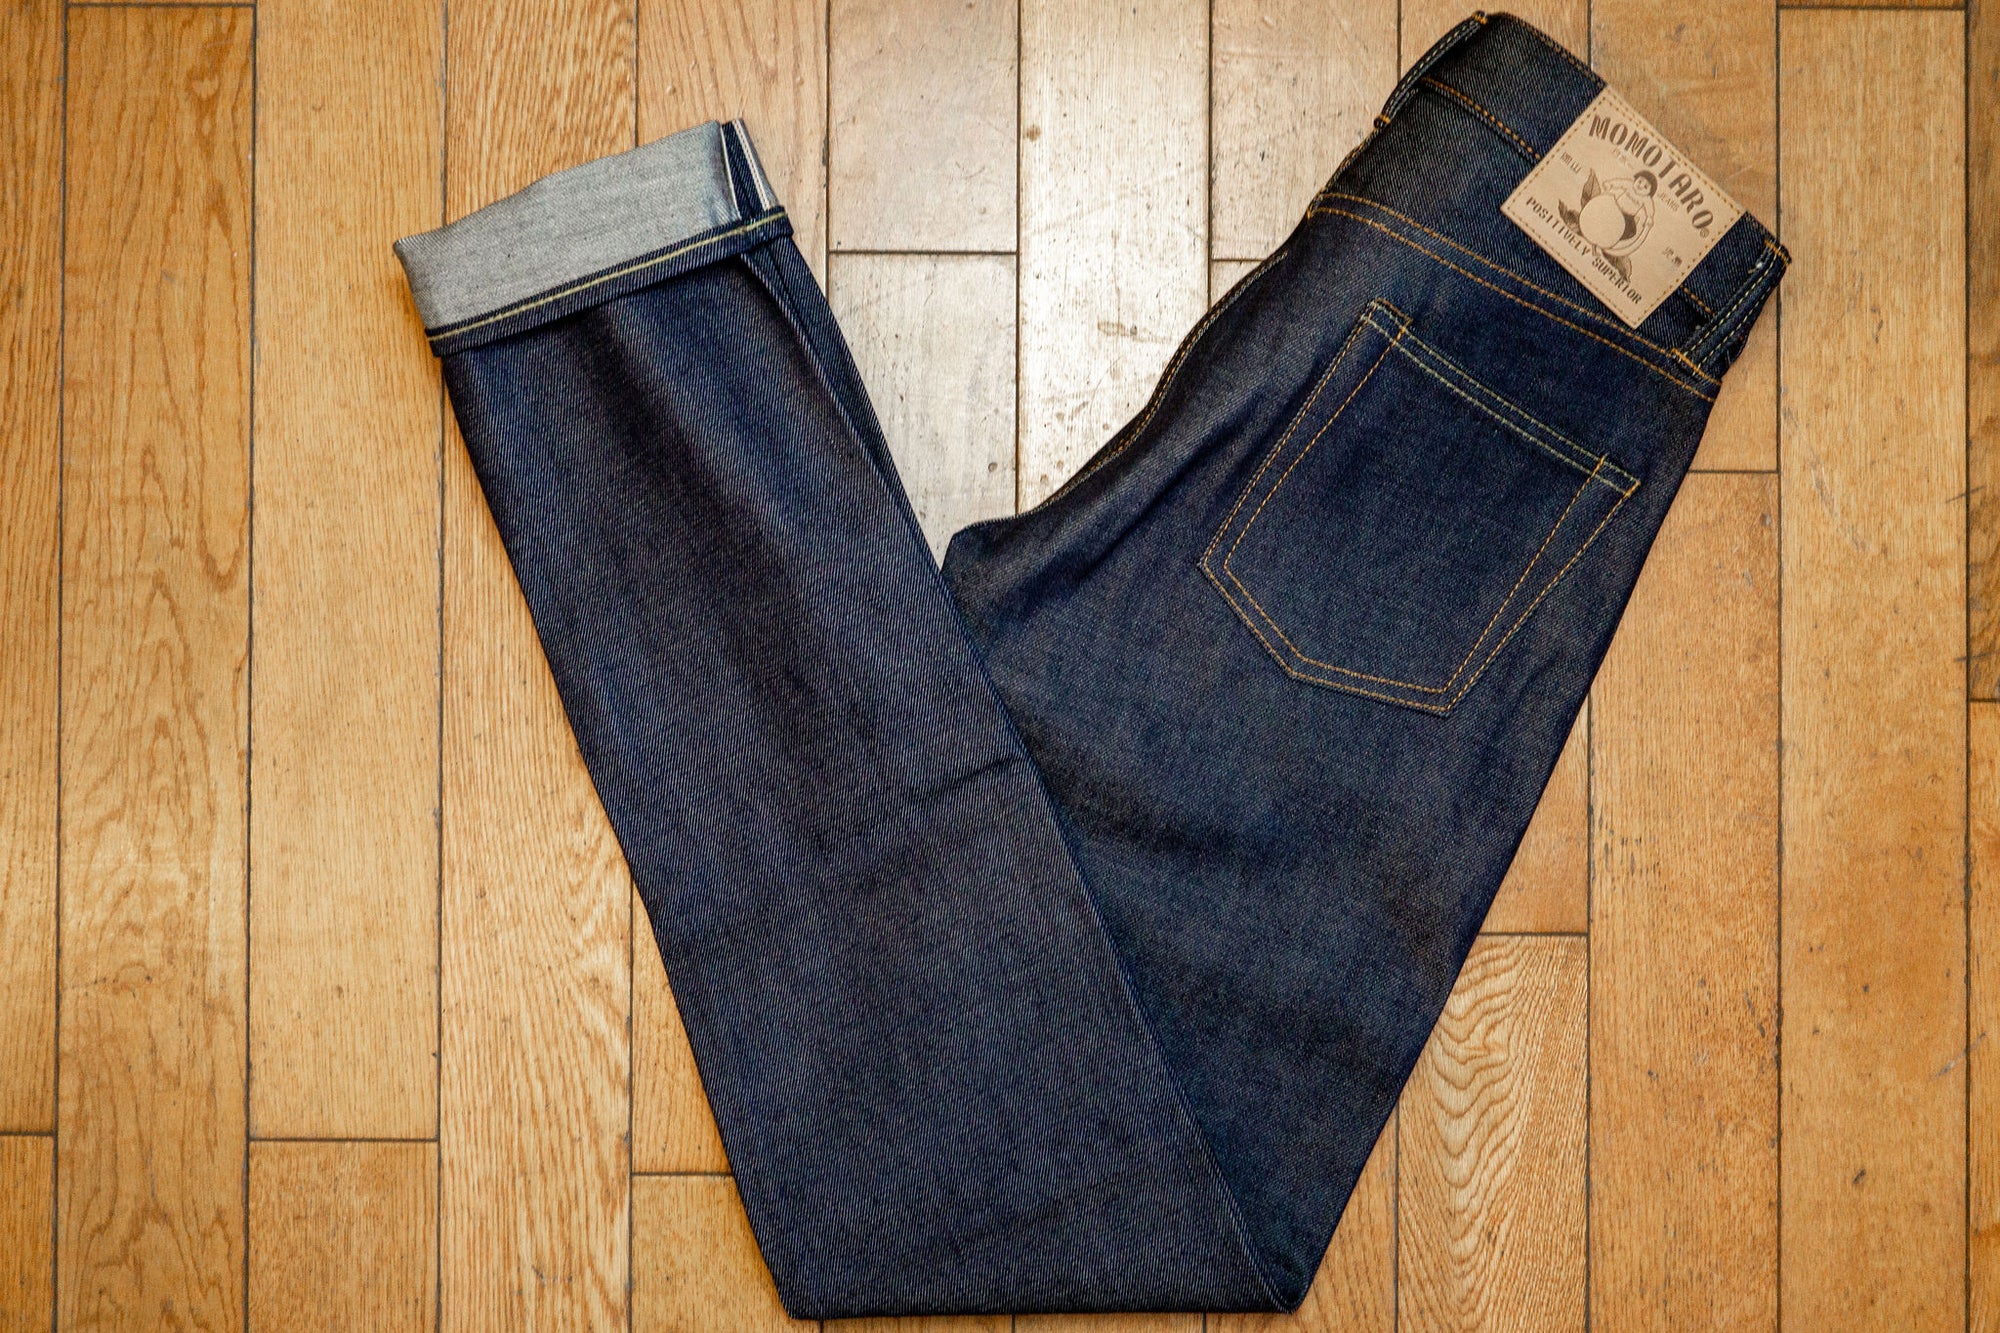 stylophile Slim Men Light Blue Jeans - Buy stylophile Slim Men Light Blue  Jeans Online at Best Prices in India | Flipkart.com